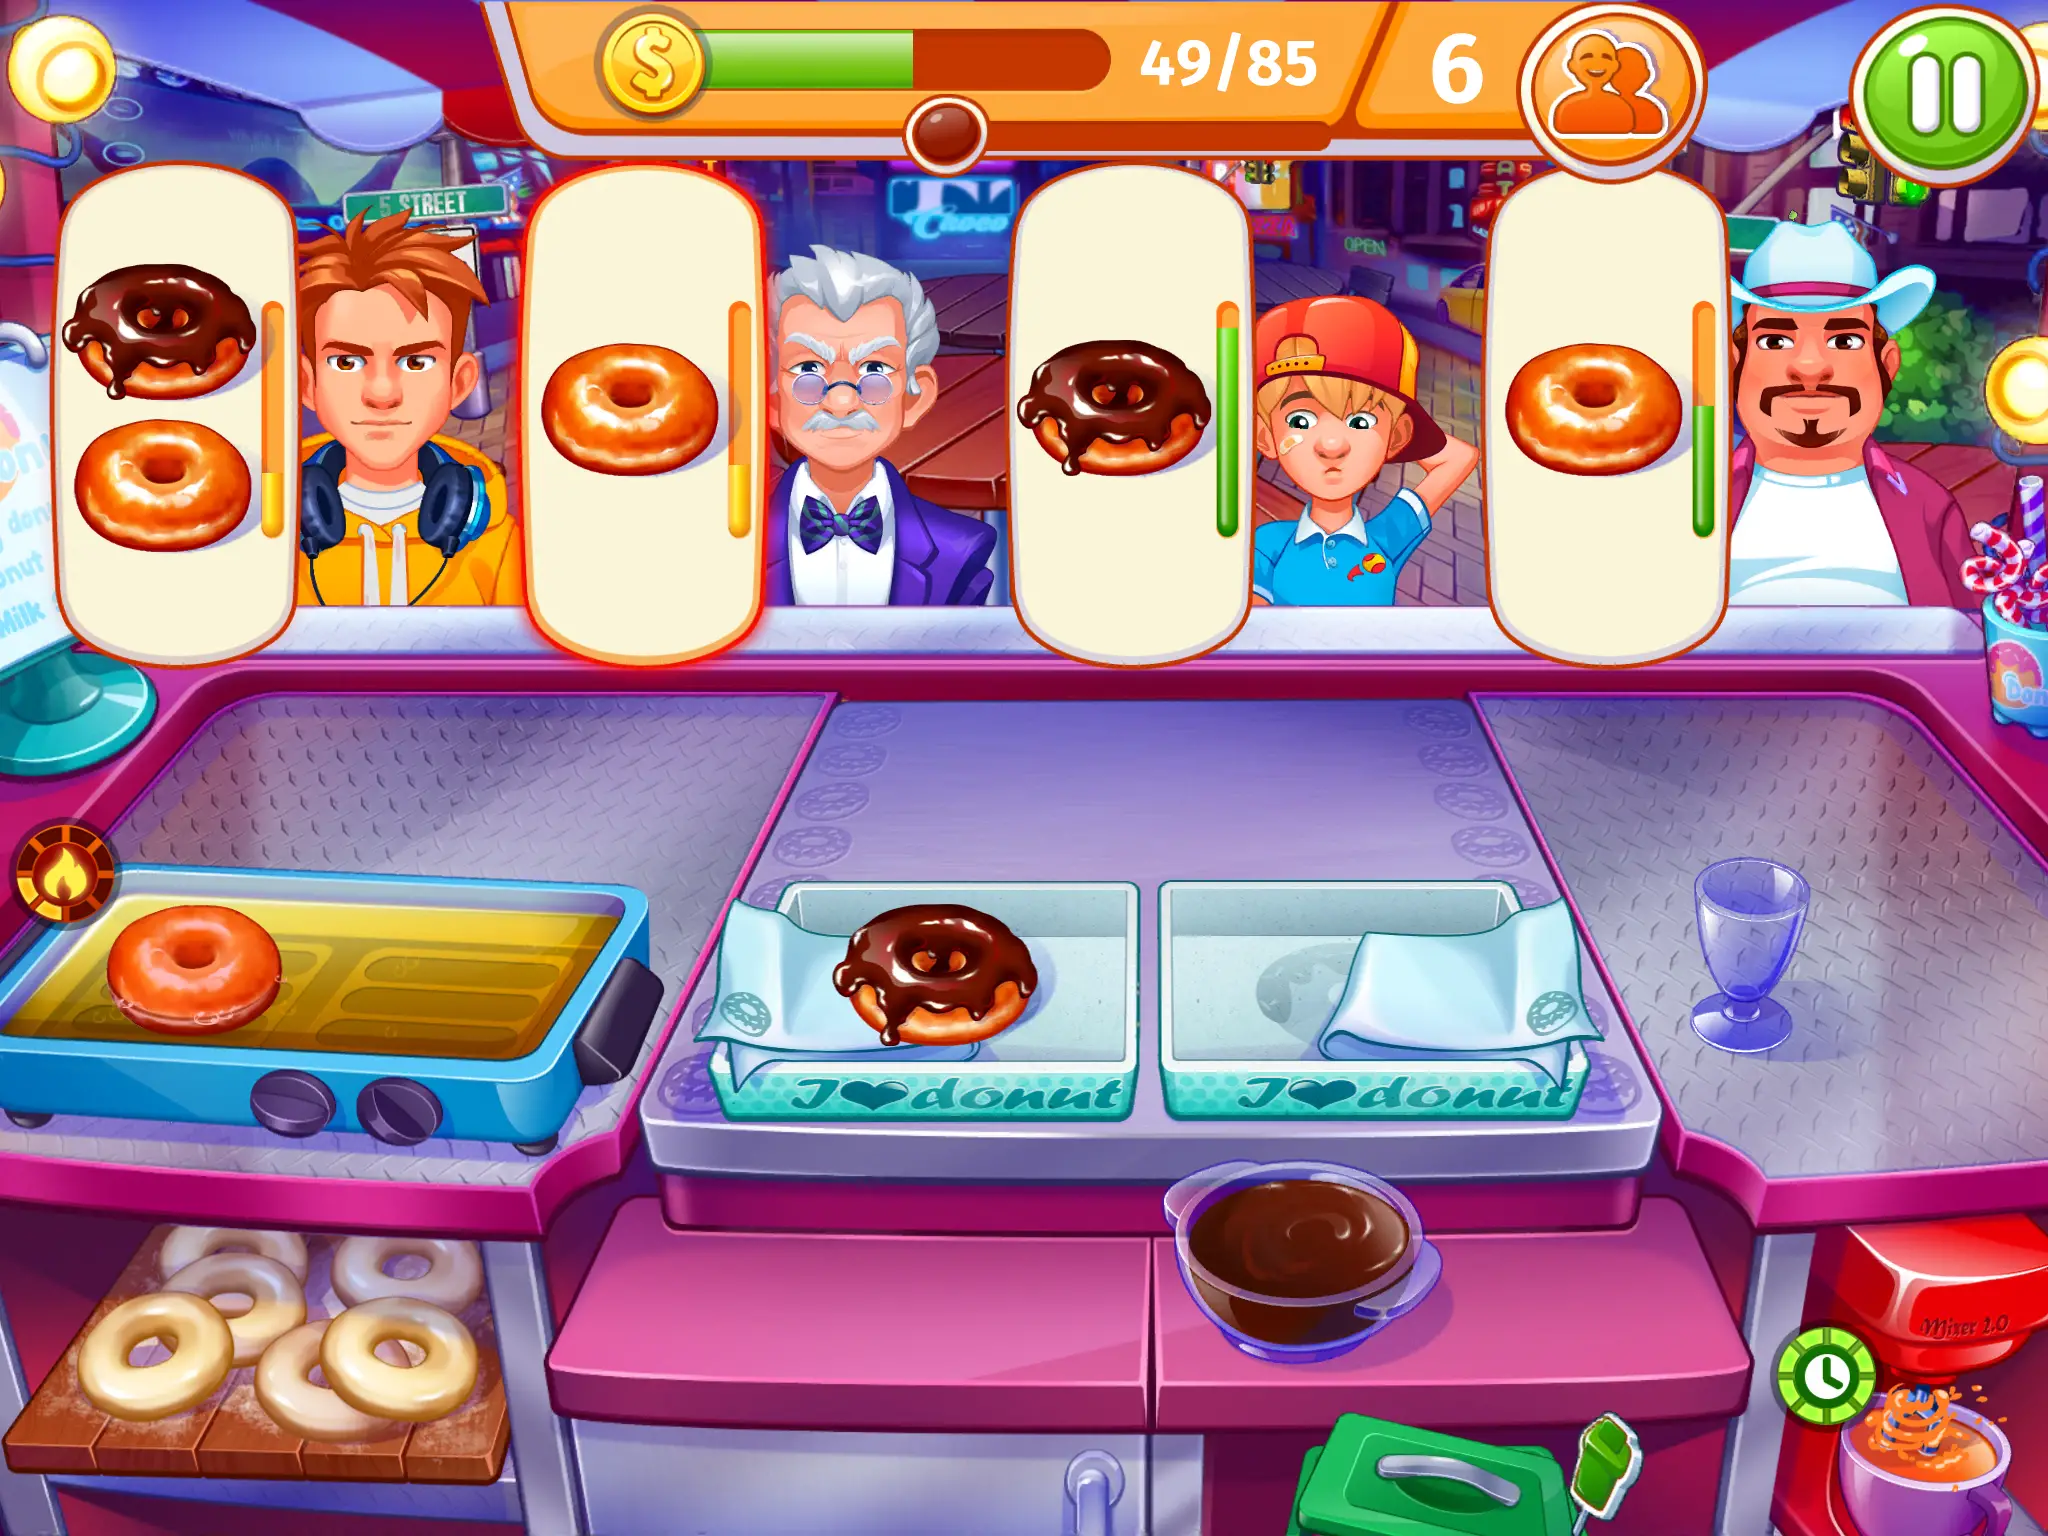 Captura de tela do jogo Cooking Madness para Android de donuts servidos aos clientes